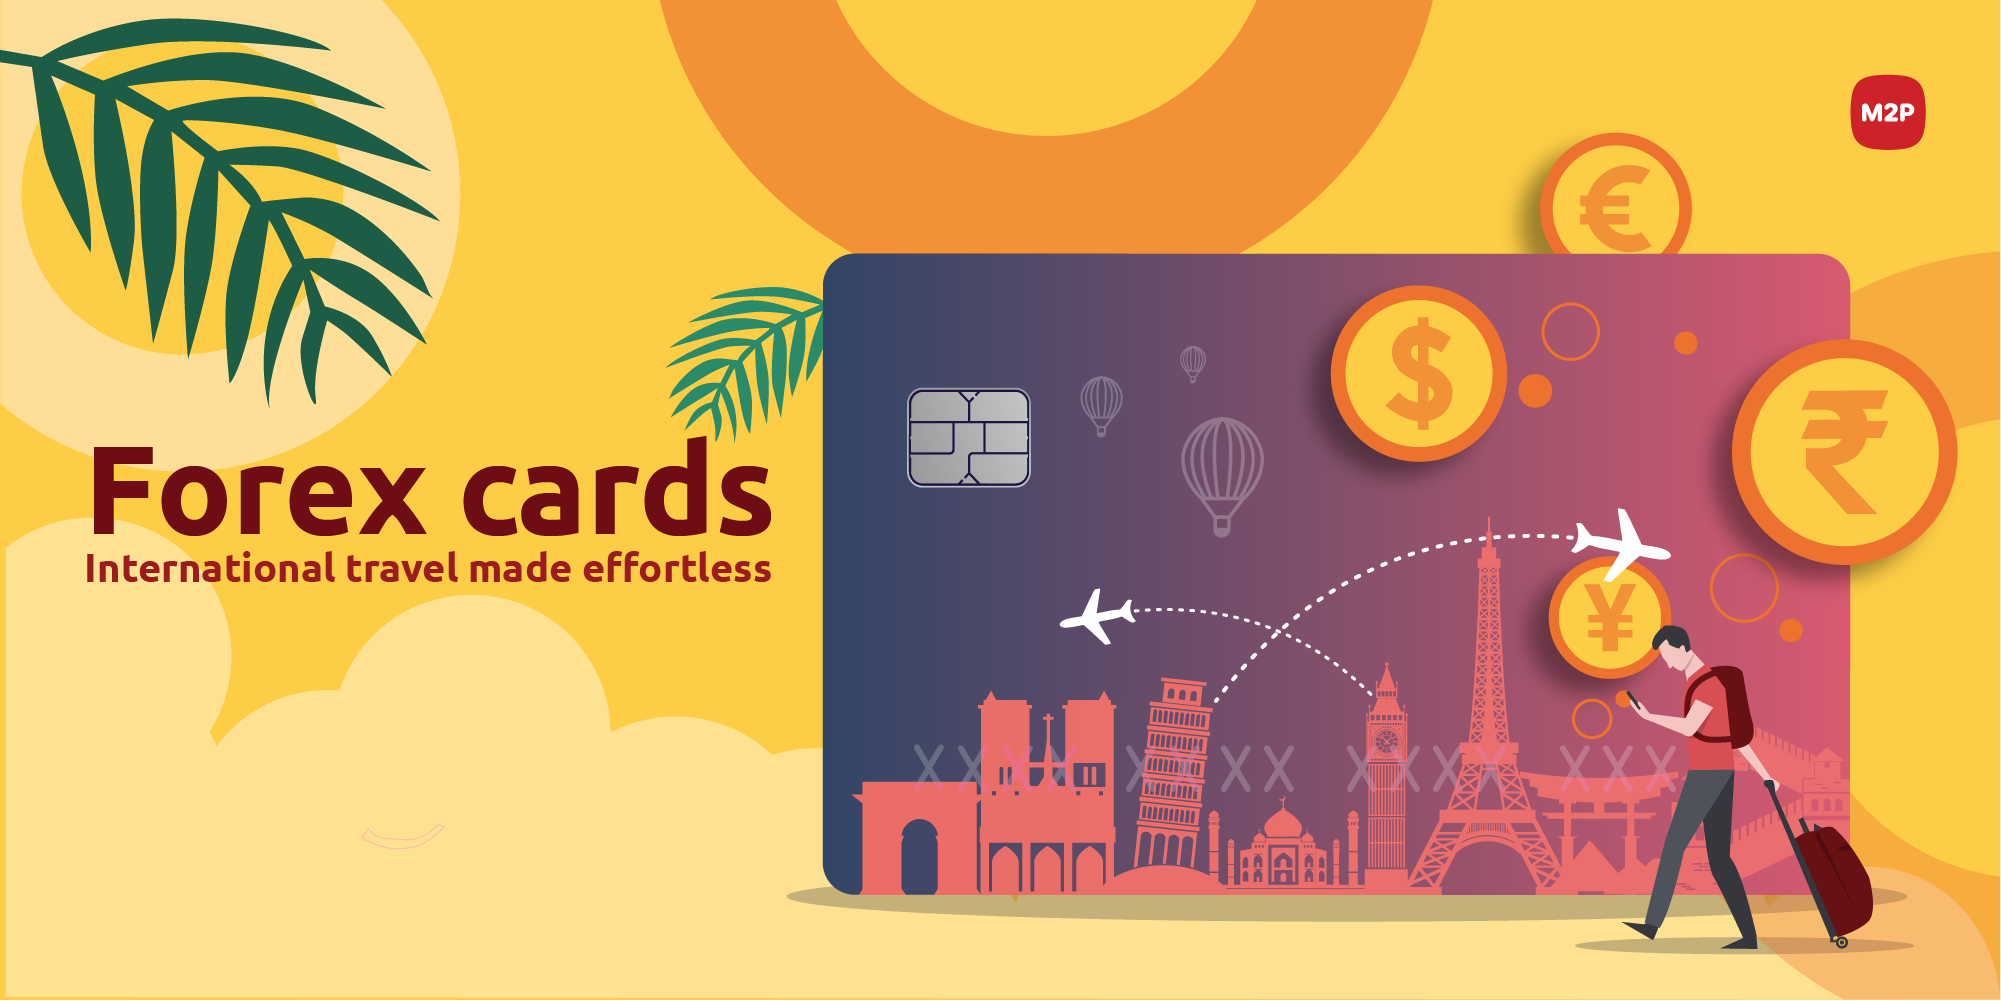 Forex cards- International travel made effortless|M2P Fintech Blog